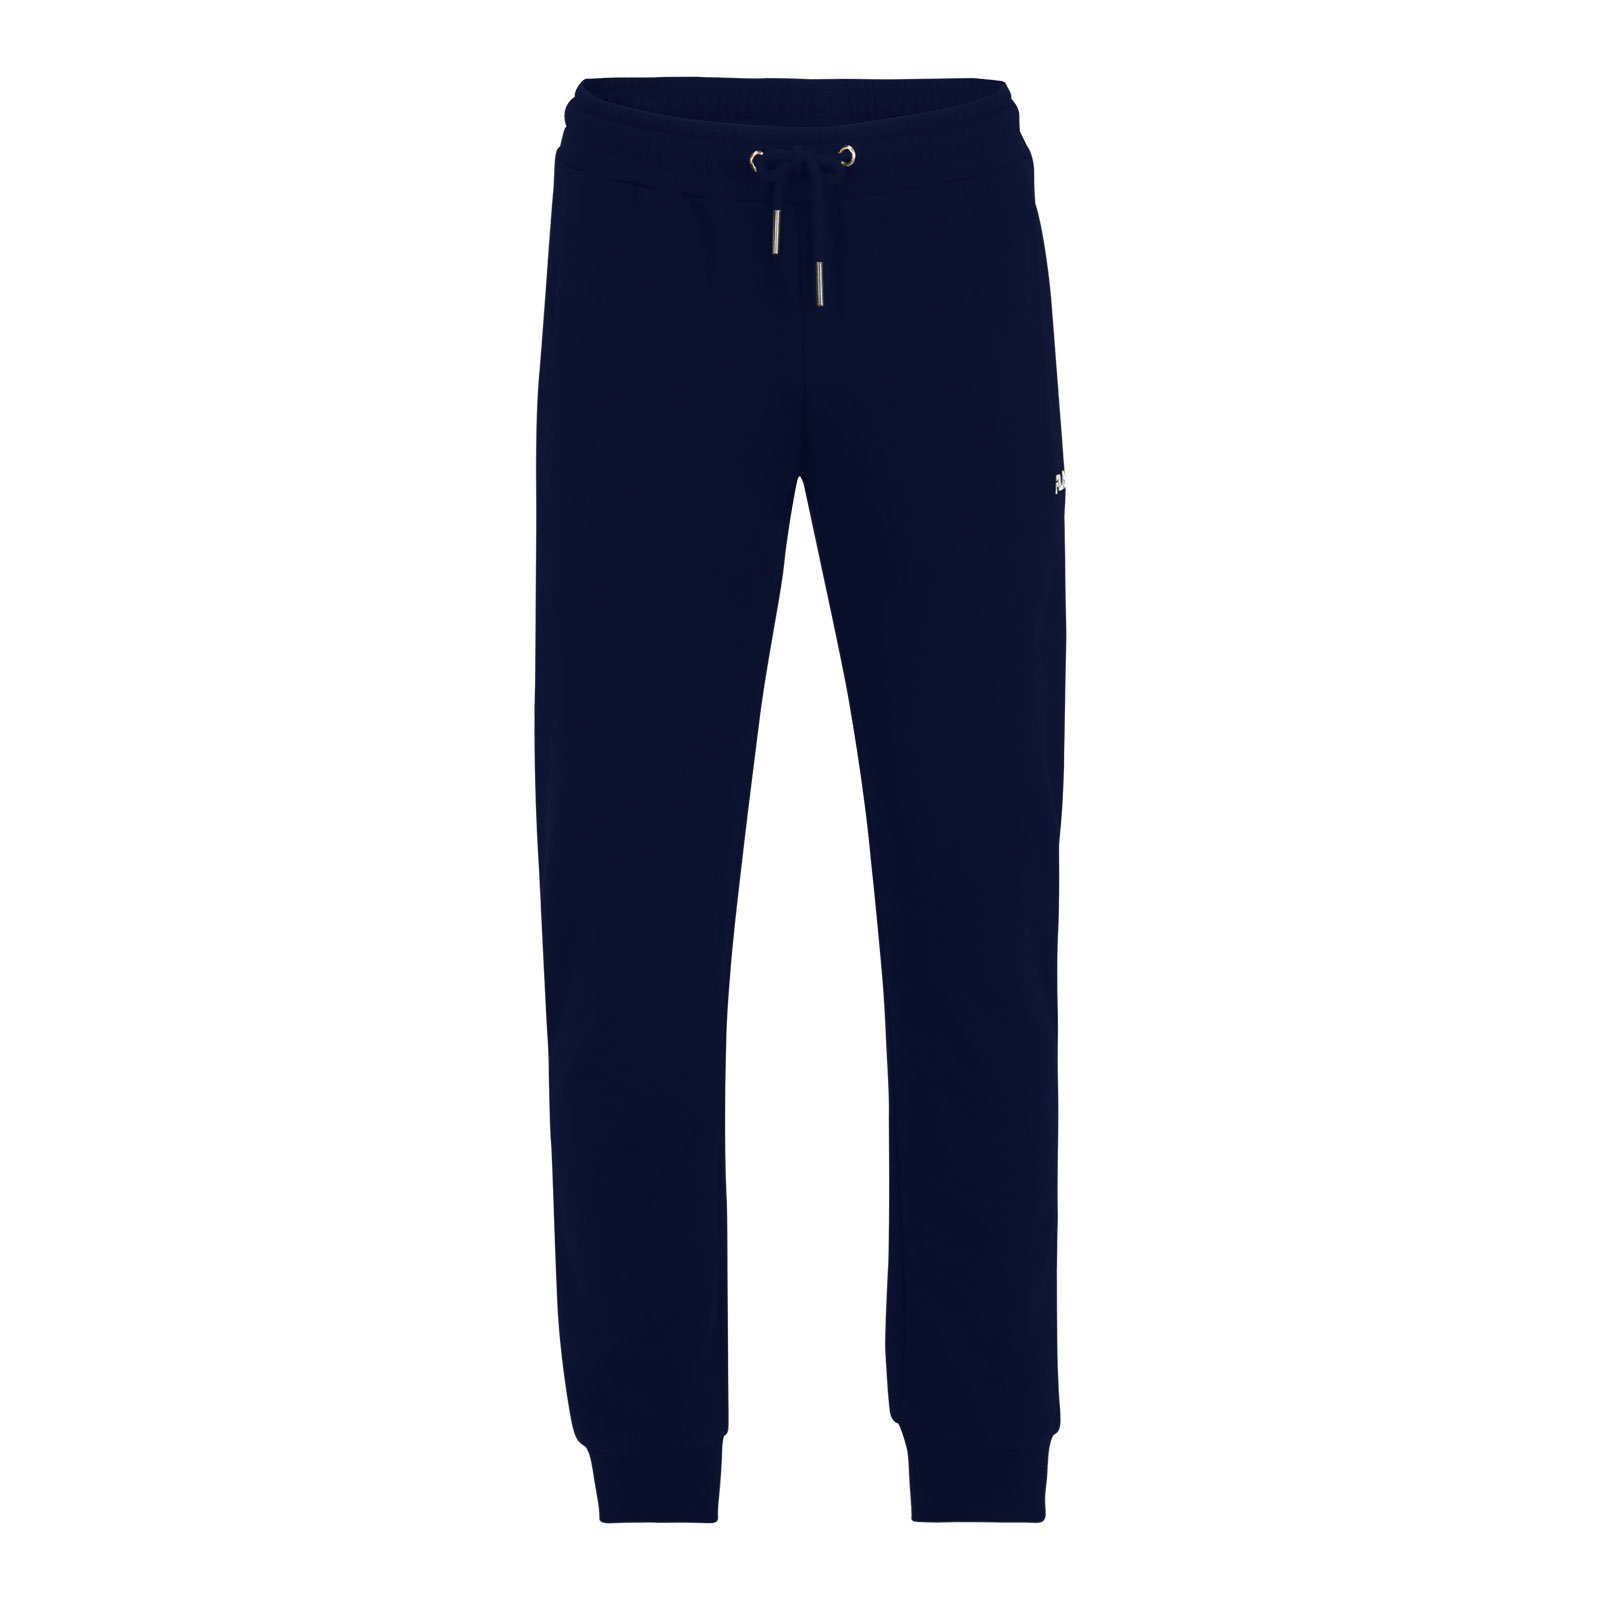 Fila Sweathose Braives Sweat Pants mit gesticktem Logo auf dem linken Oberschenkel 50001 medieval blue